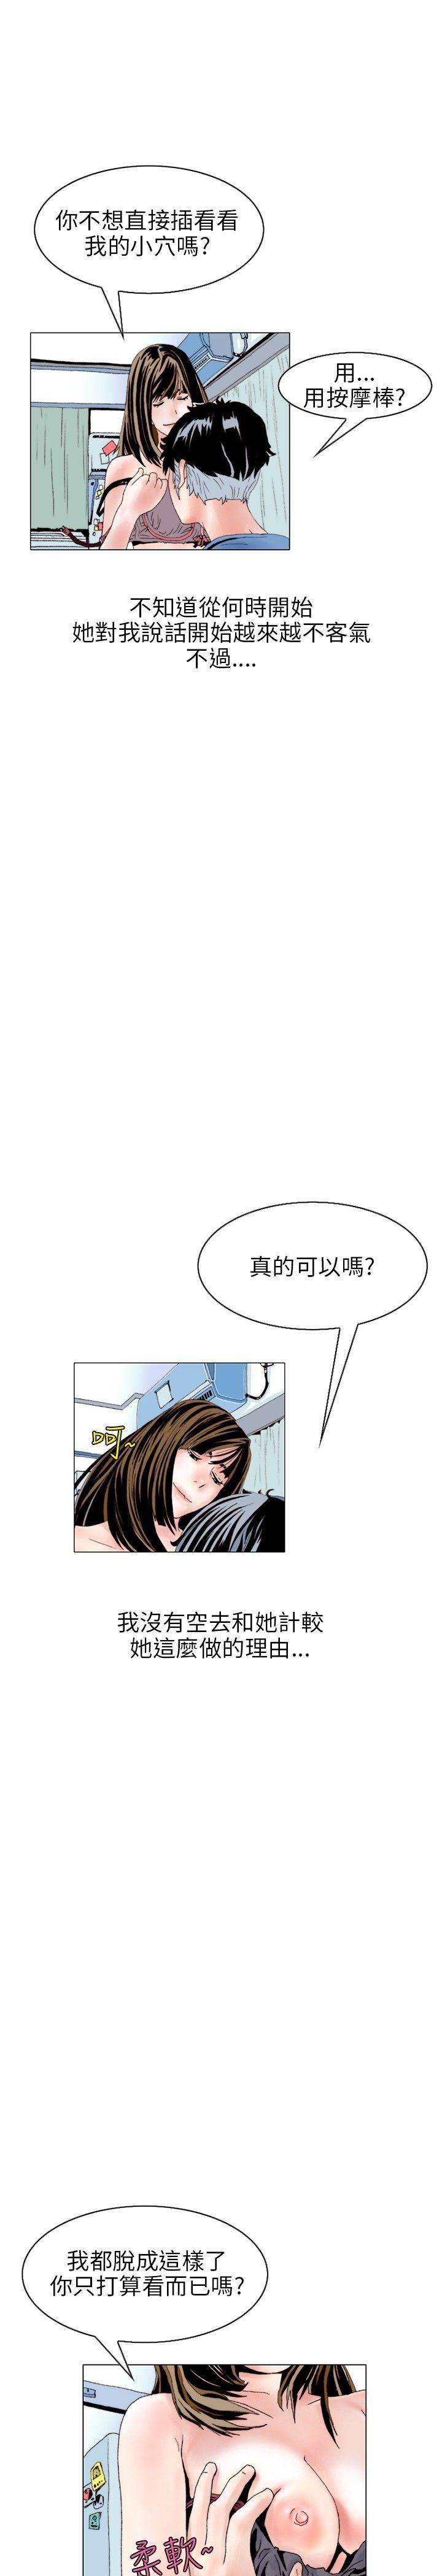 韩国污漫画 秘密Story 意外的包裹(3) 1